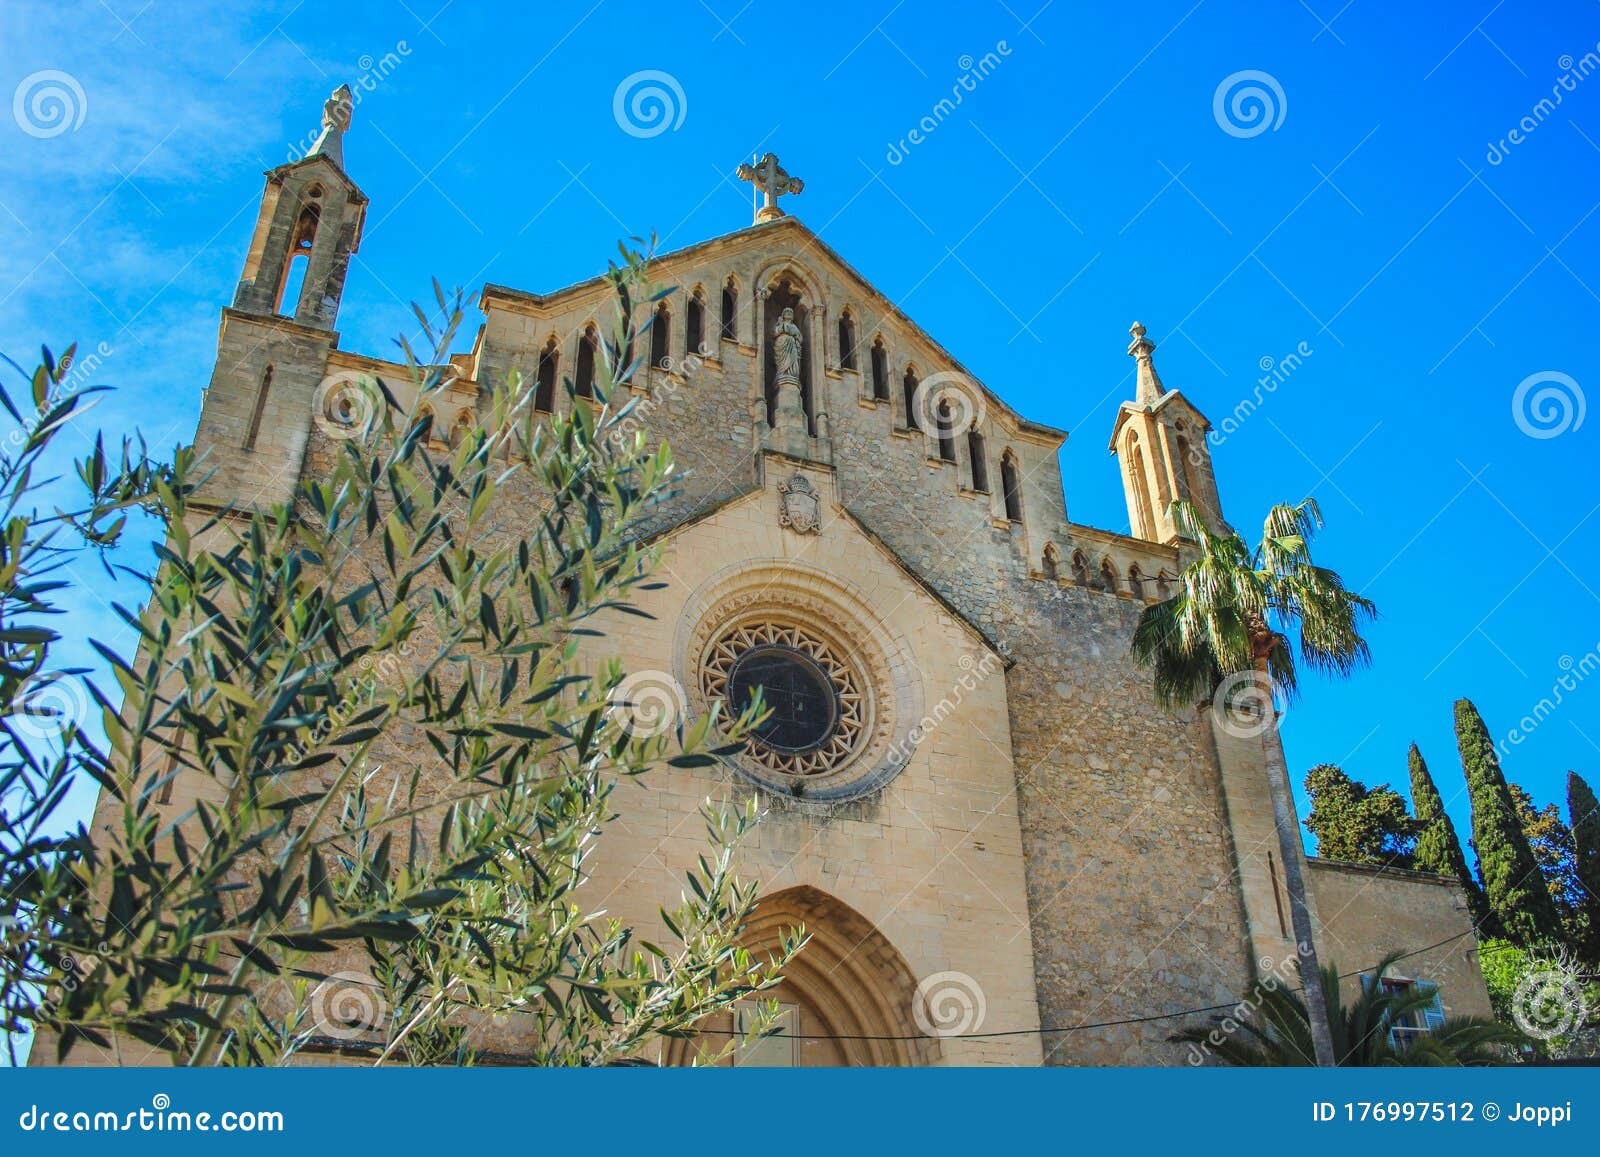 parish church of the transfiguration of the lord - transfiguracio del senyor - located in the village arta, mallorca, spain